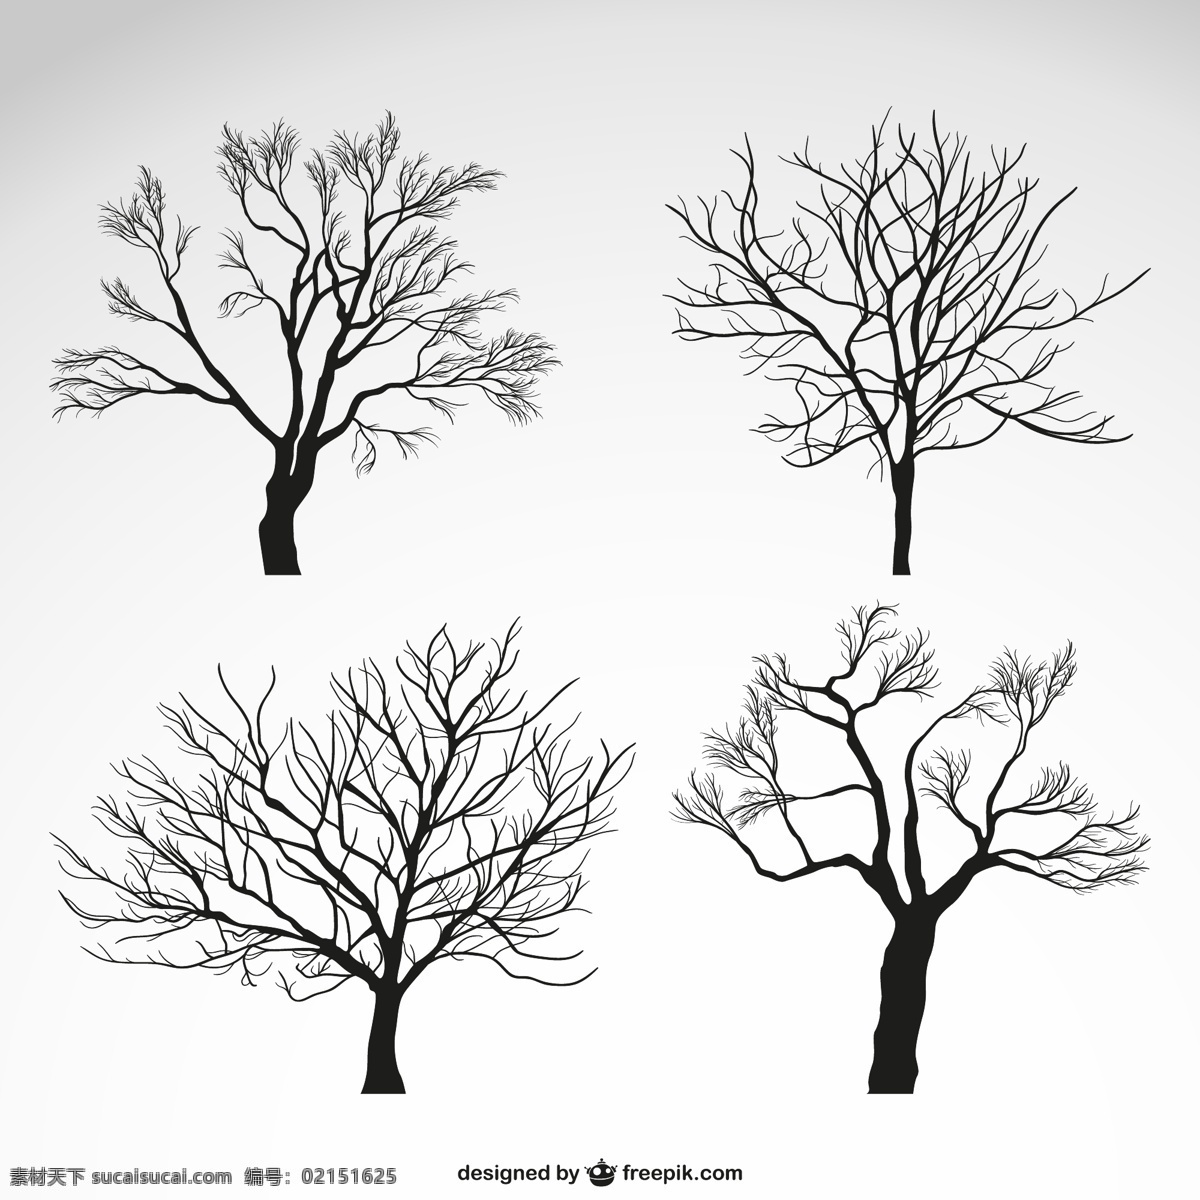 冬季 树木 矢量 枯树 植物 矢量图 格式 高清图片